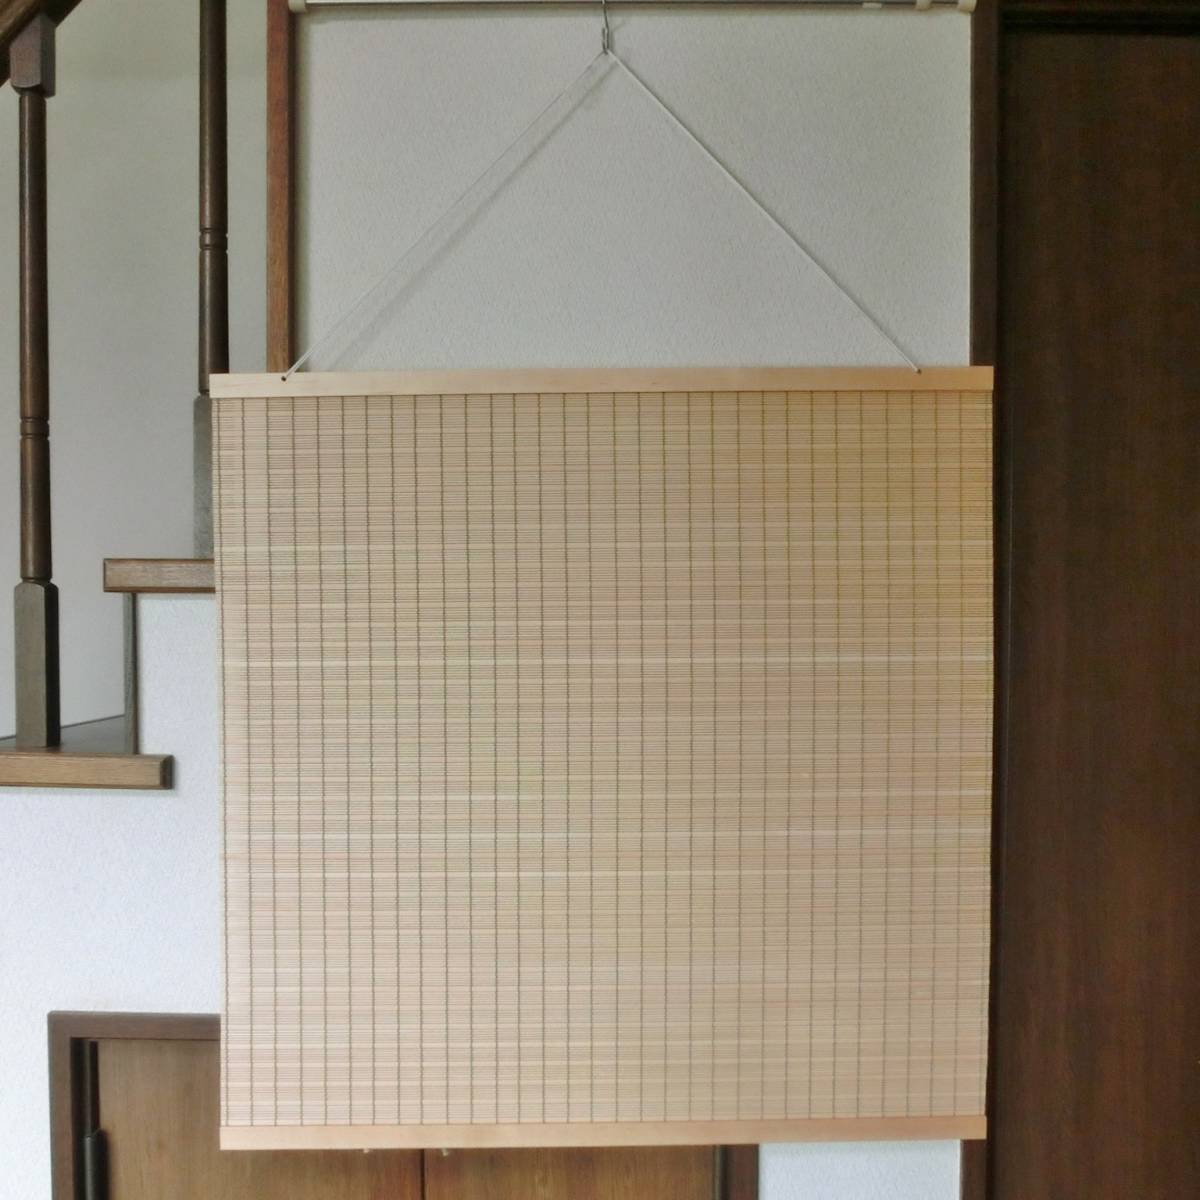 نسيج خشبي جديد غير مستخدم نسيج خشبي أنيق على الطراز الياباني 24 عرض 80 سنتيمتر طول 80.5 سنتيمتر, العناصر اليدوية, الداخلية, بضائع متنوعة, لوحة, نسيج